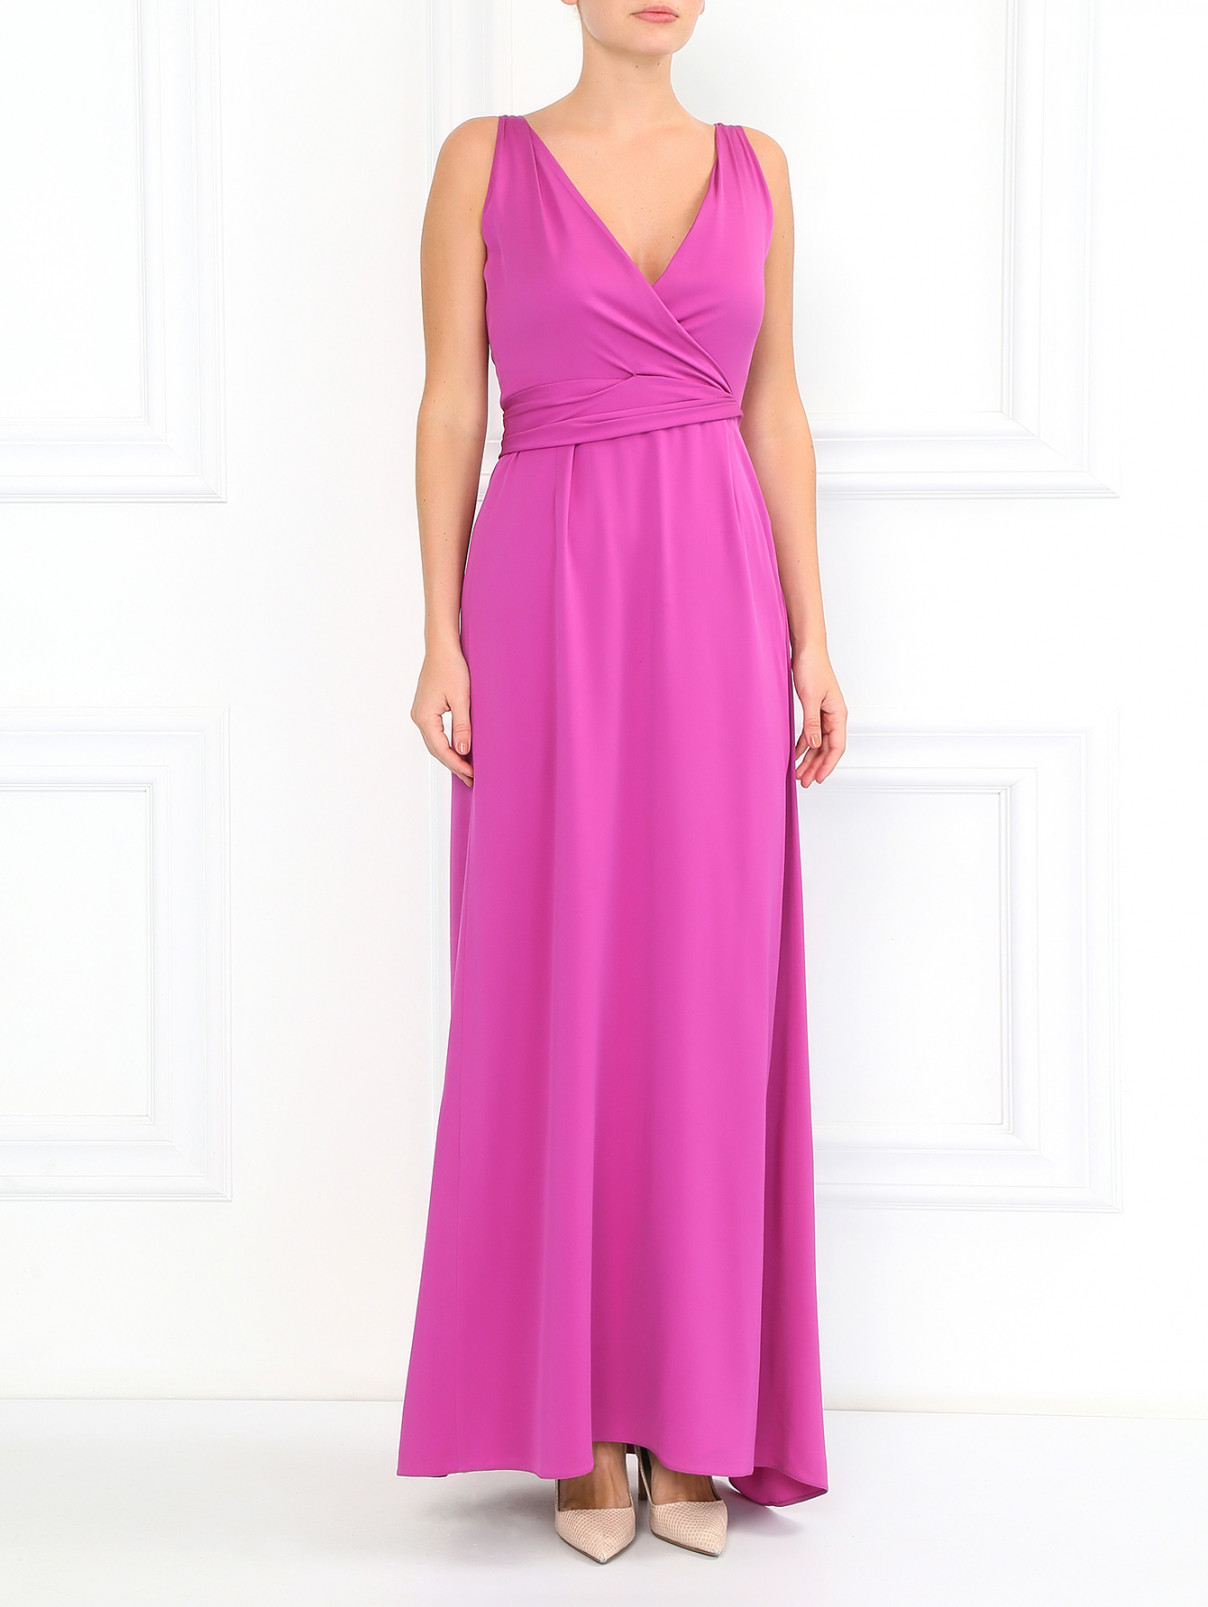 Платье-макси из шелка с драпировкой Armani Collezioni  –  Модель Общий вид  – Цвет:  Фиолетовый